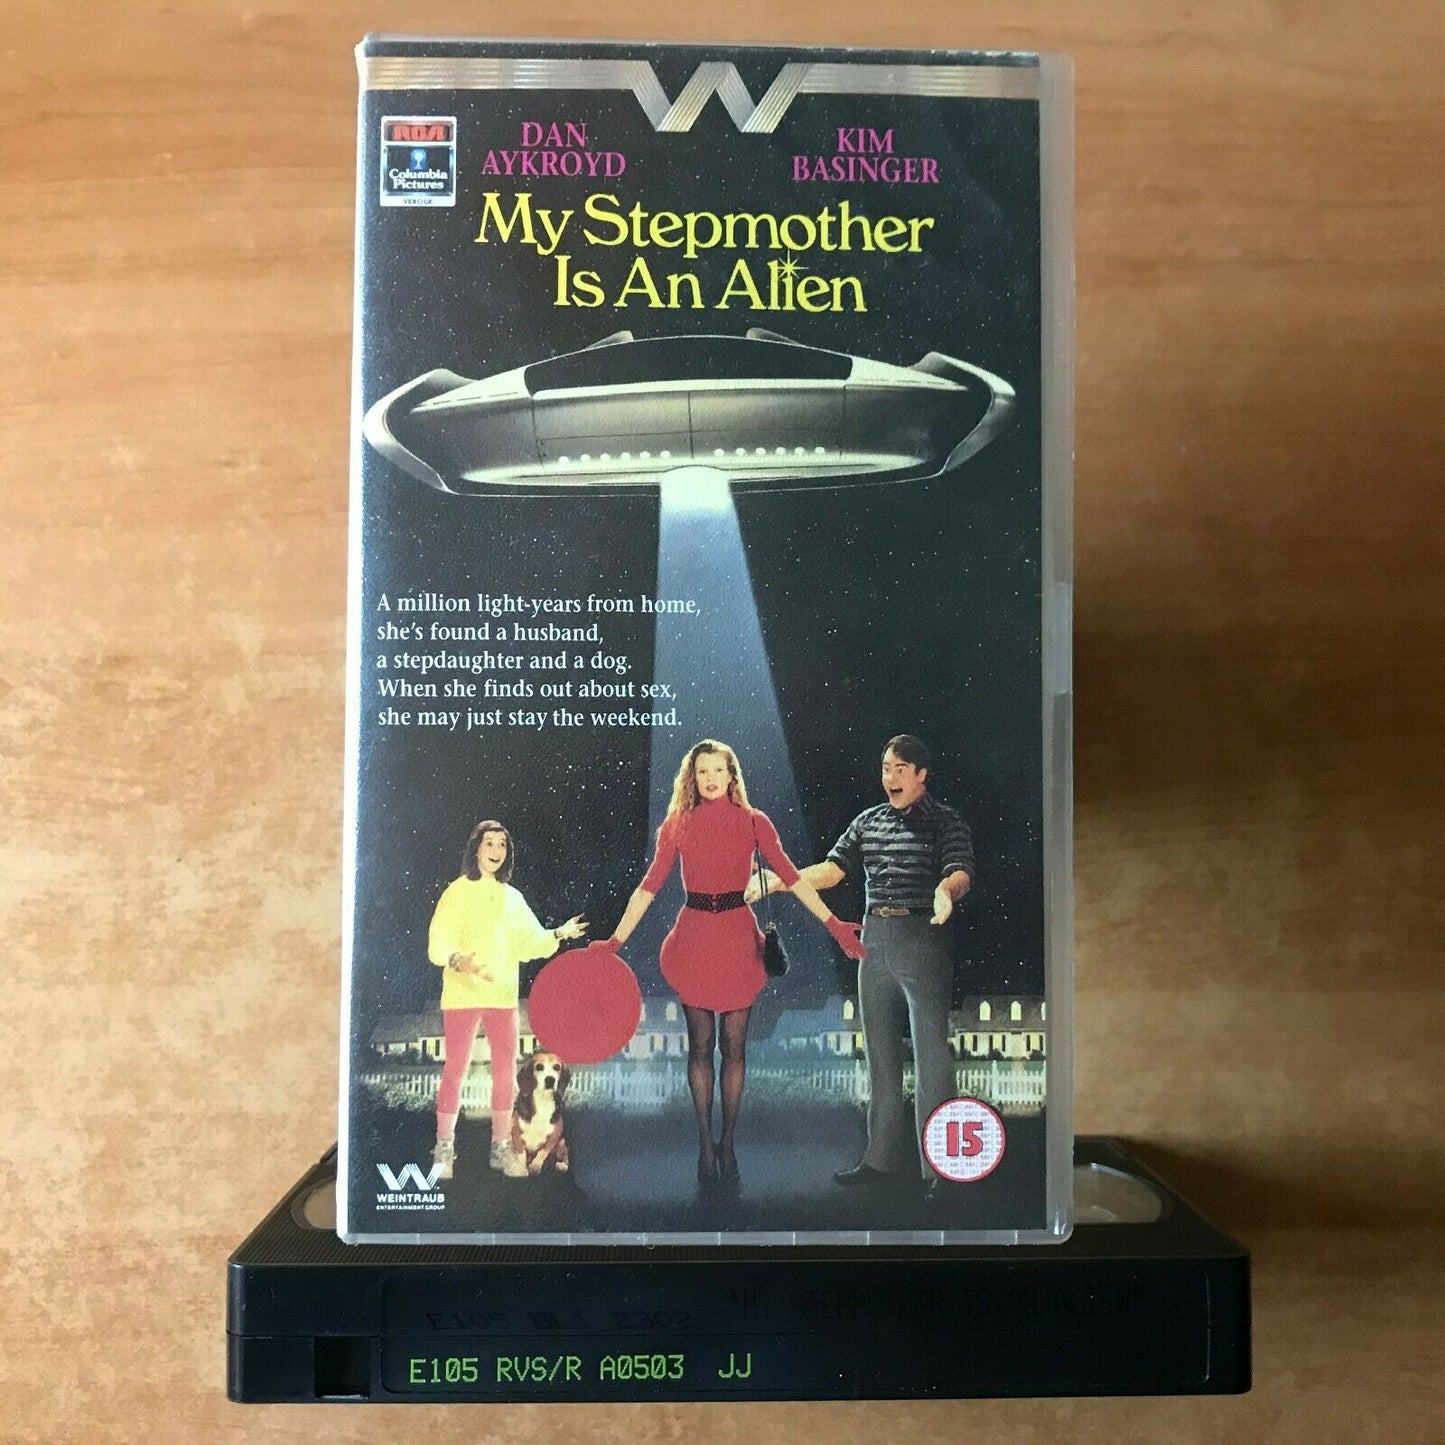 My Stepmother Is An Alien: Dan Aykroyd & Kim Basinger - Sci-Fi Comedy - Pal VHS-